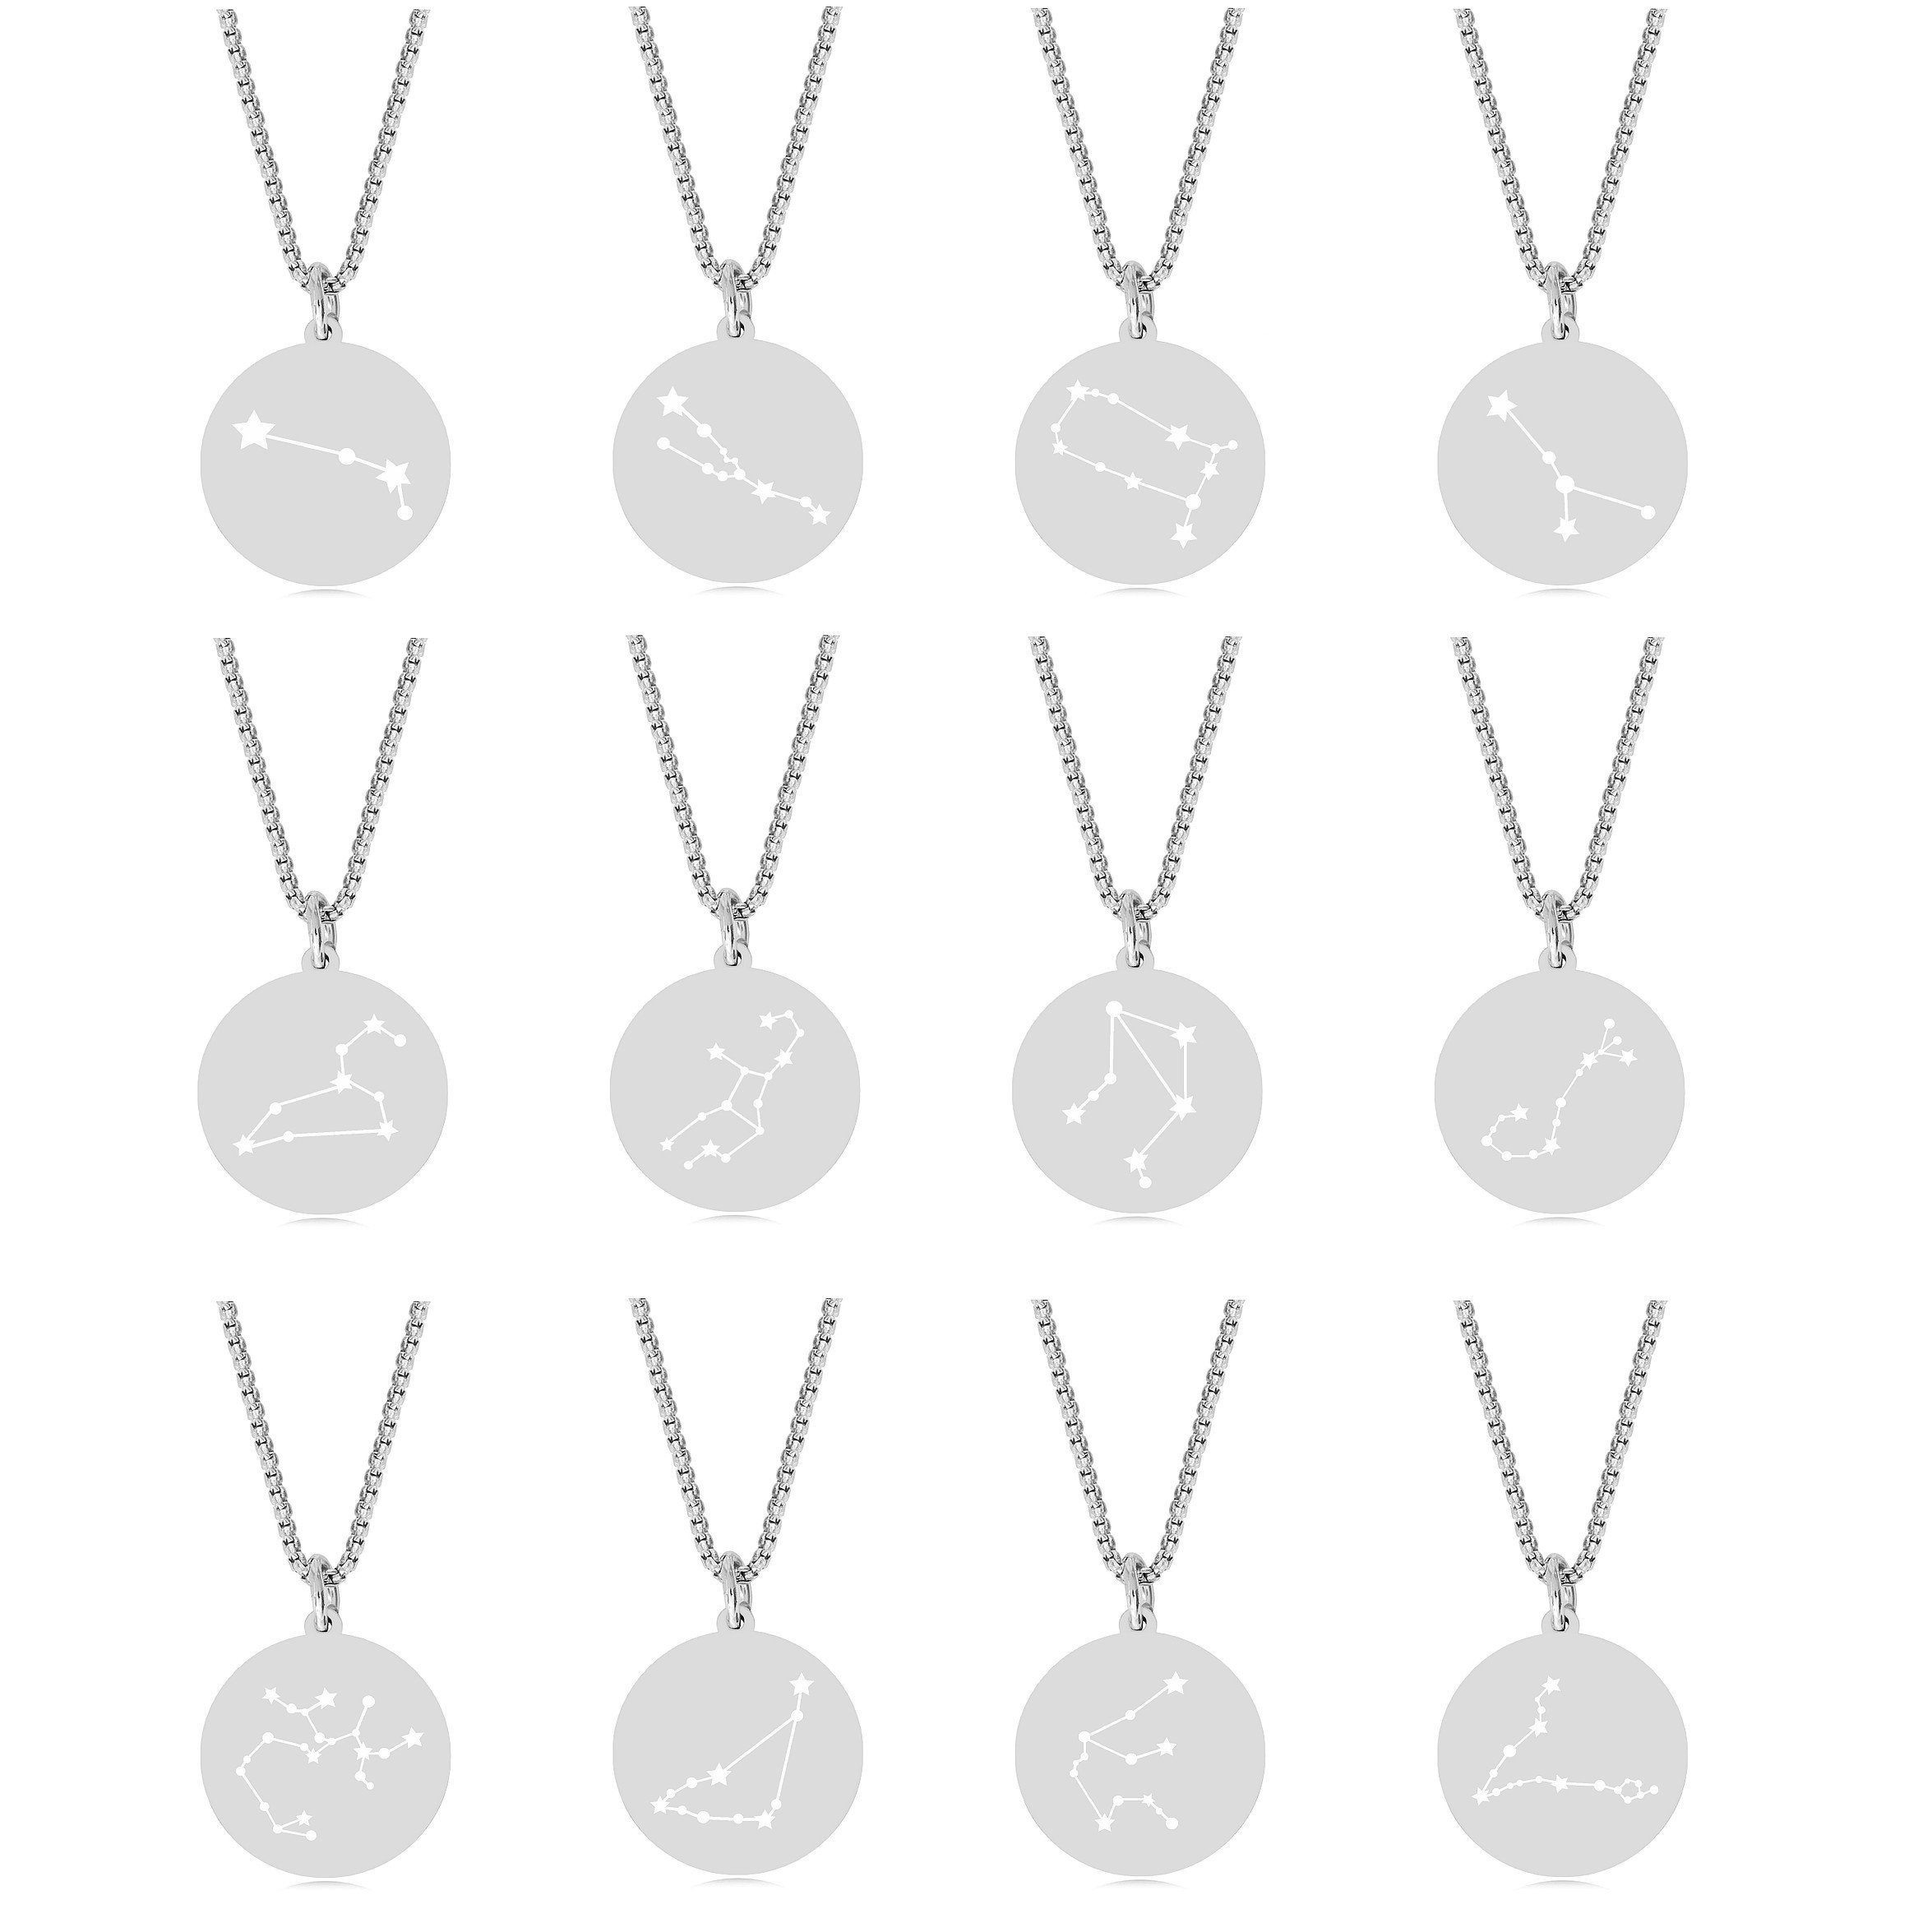 Timando Kette mit Anhänger Sternbild Kette mit Sternzeichen in silber-farben, Halskette Horoskop, Geschenk zum Geburtstag